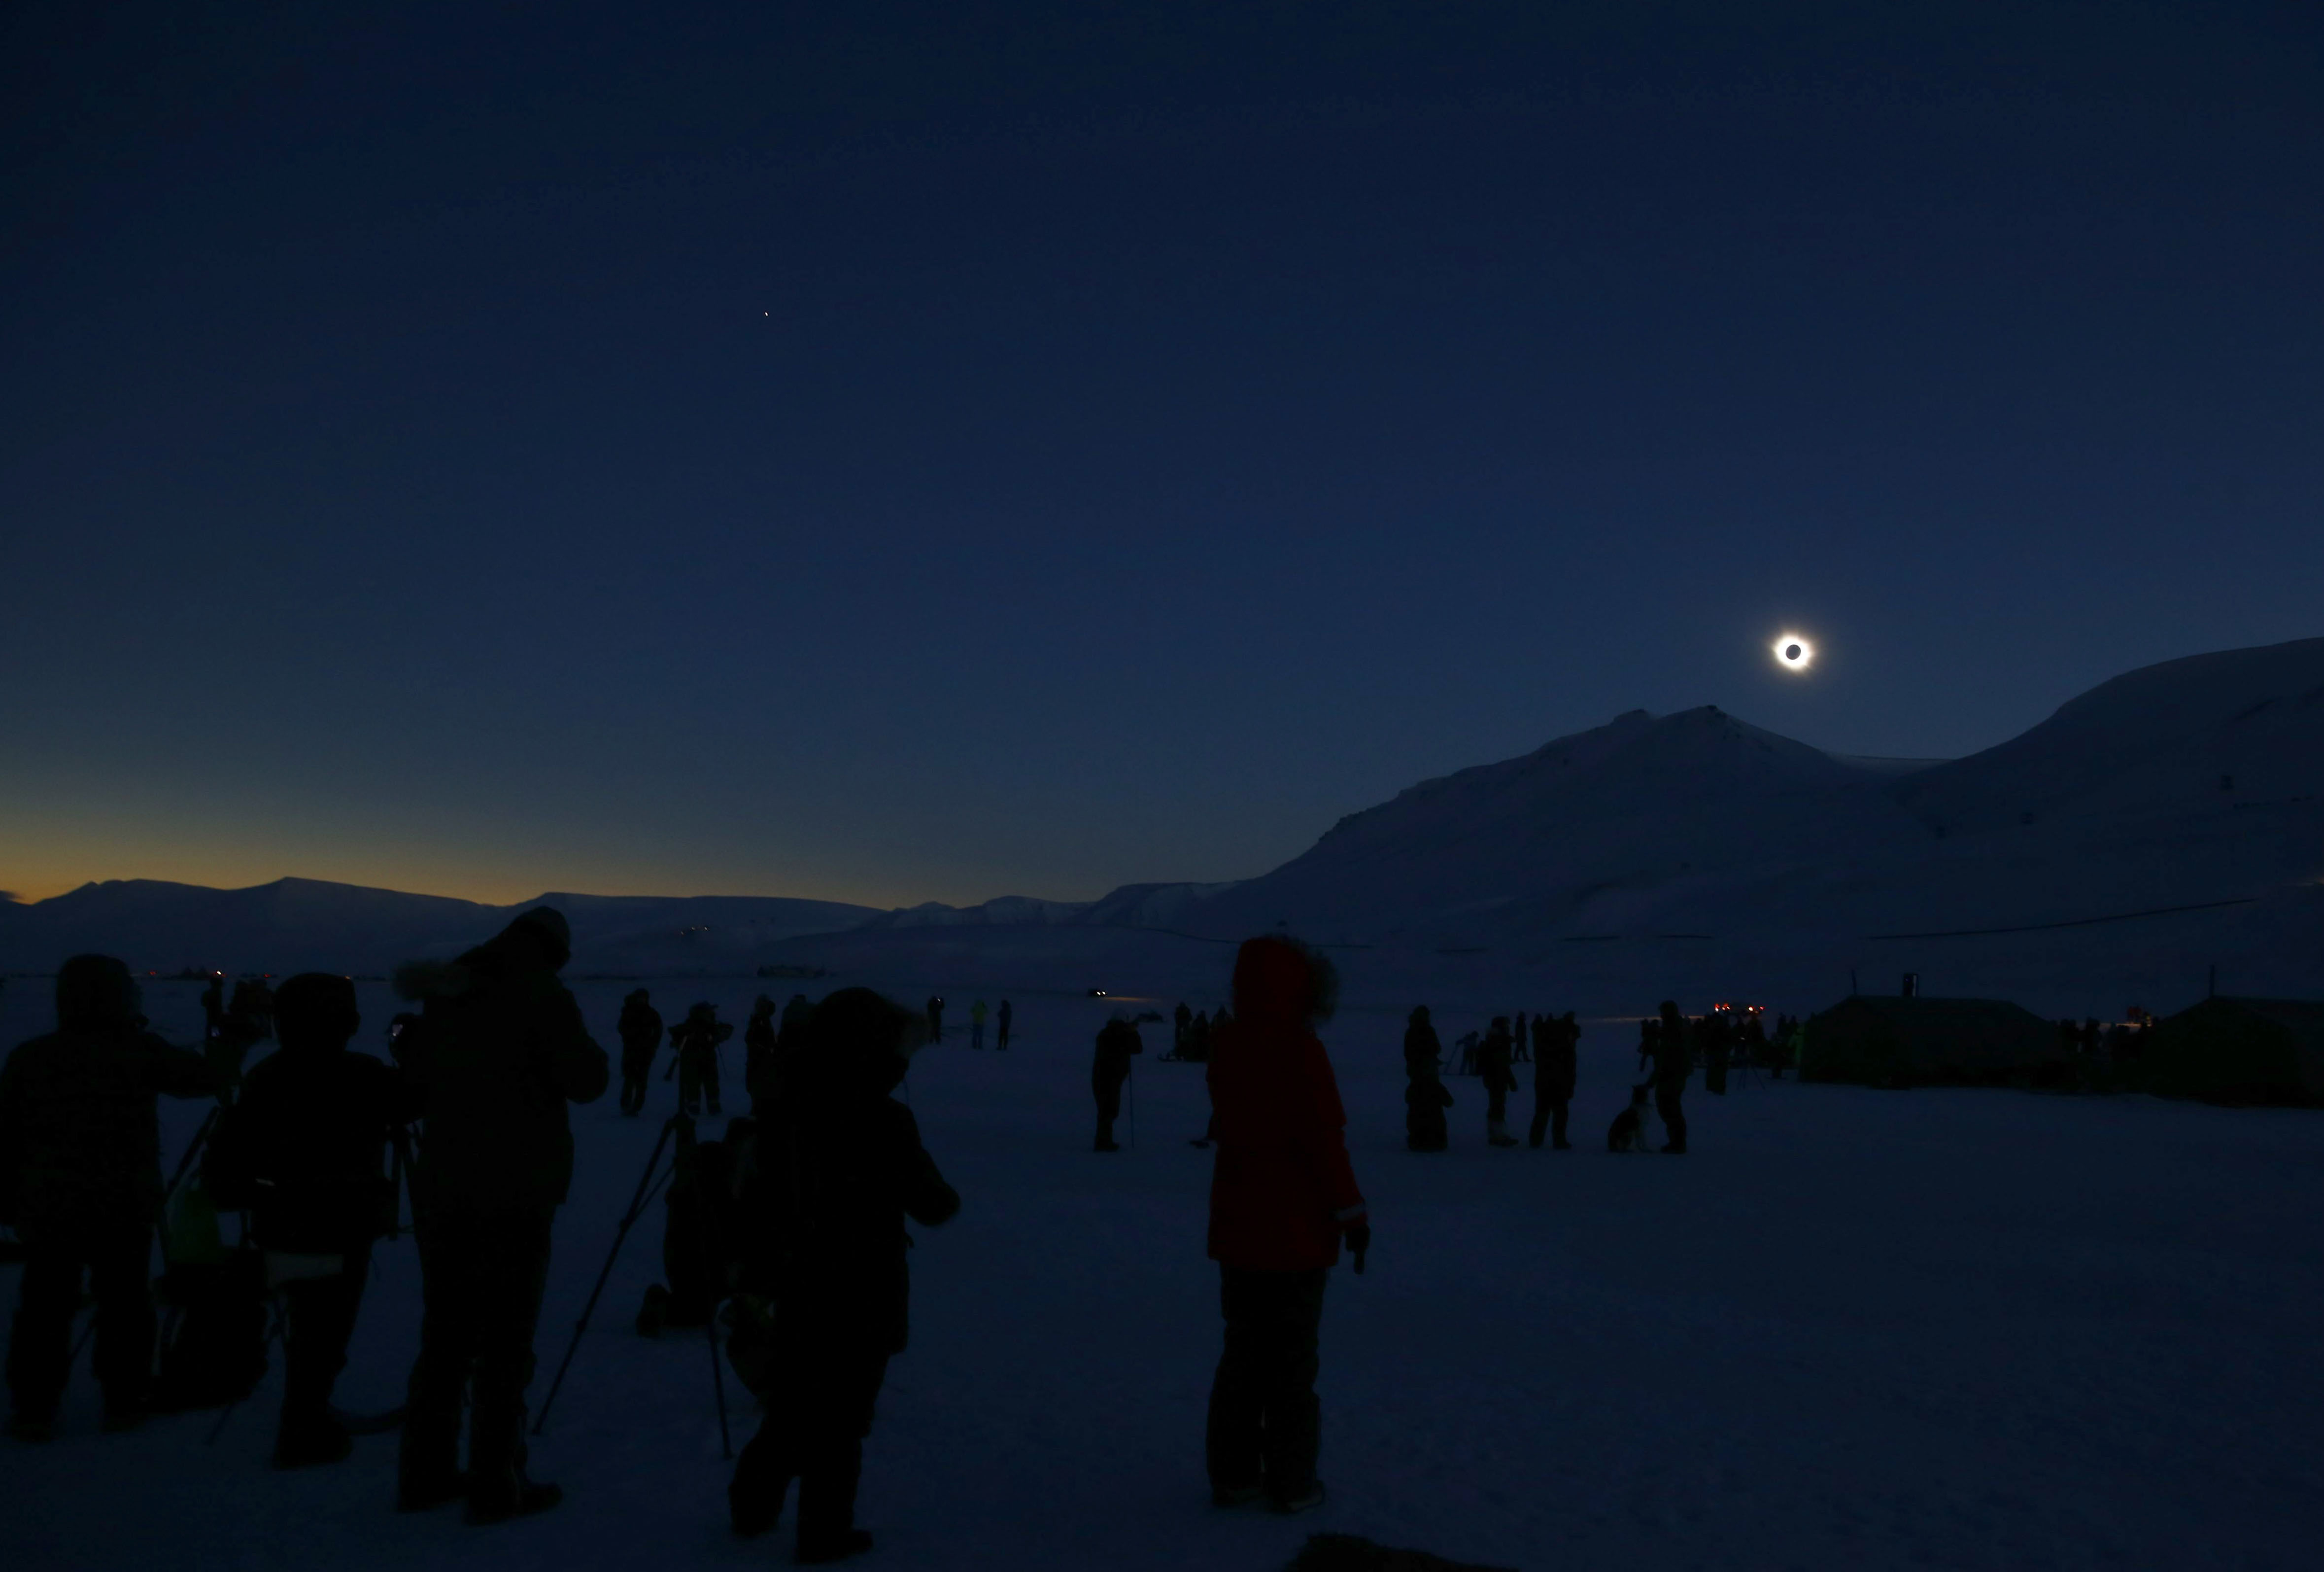 Eclipse solar deleita a millones en Europa